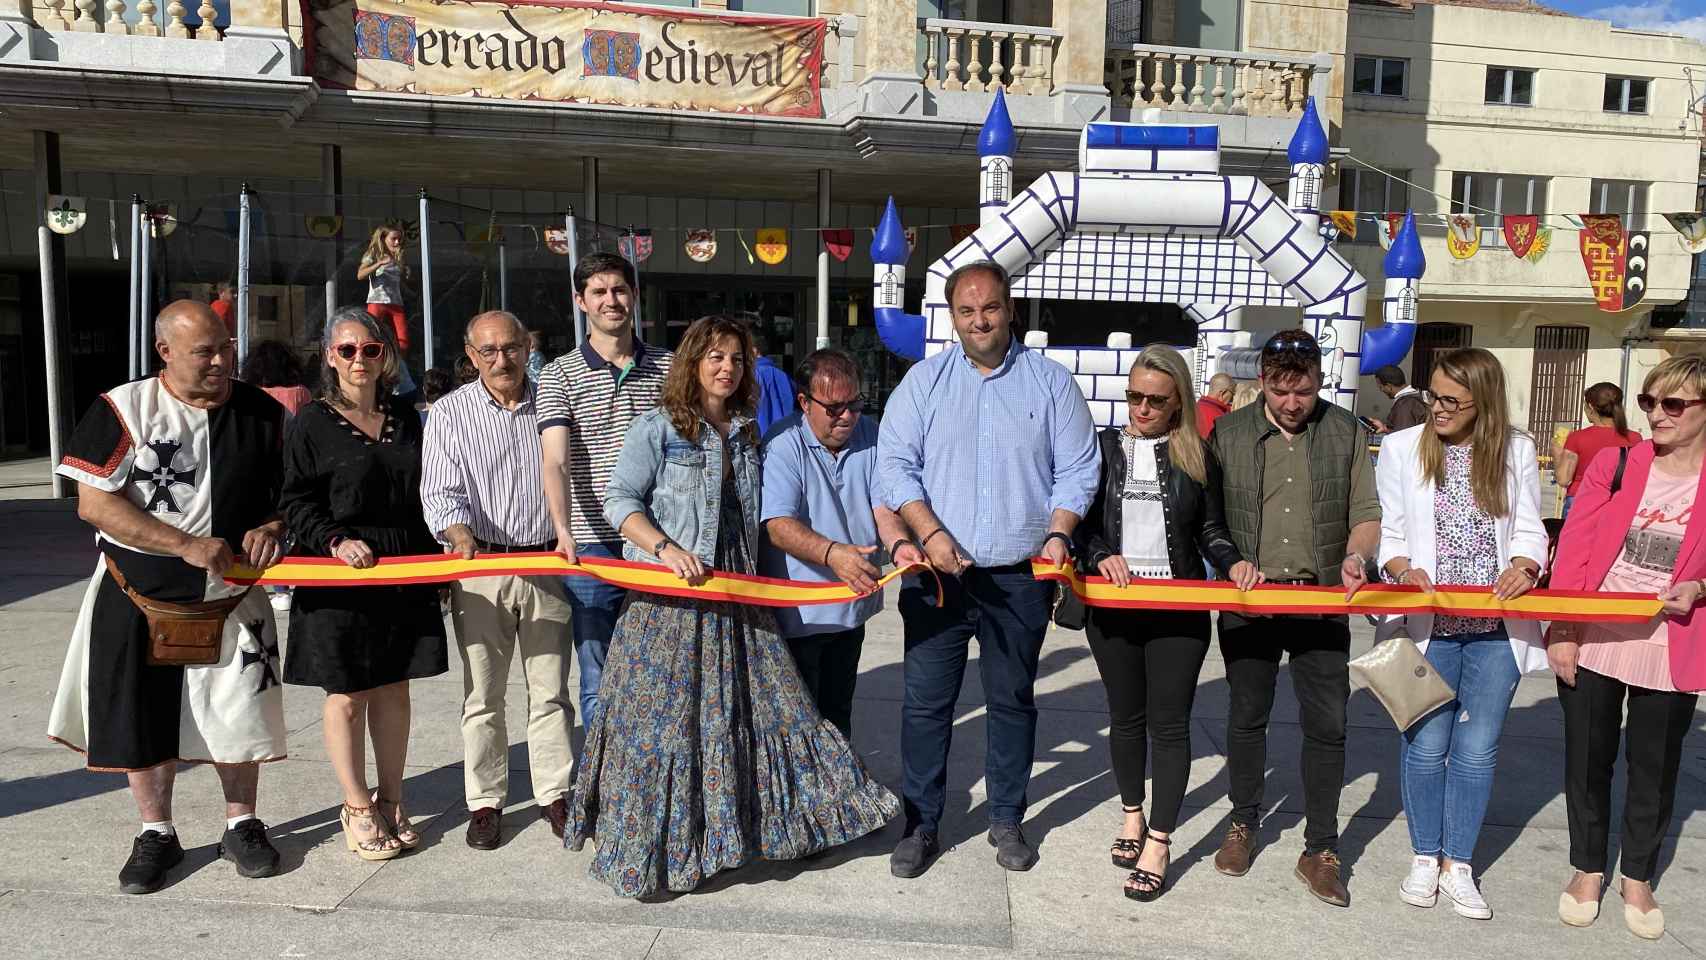 El alcalde de Guijuelo inaugura el mercado medieval.